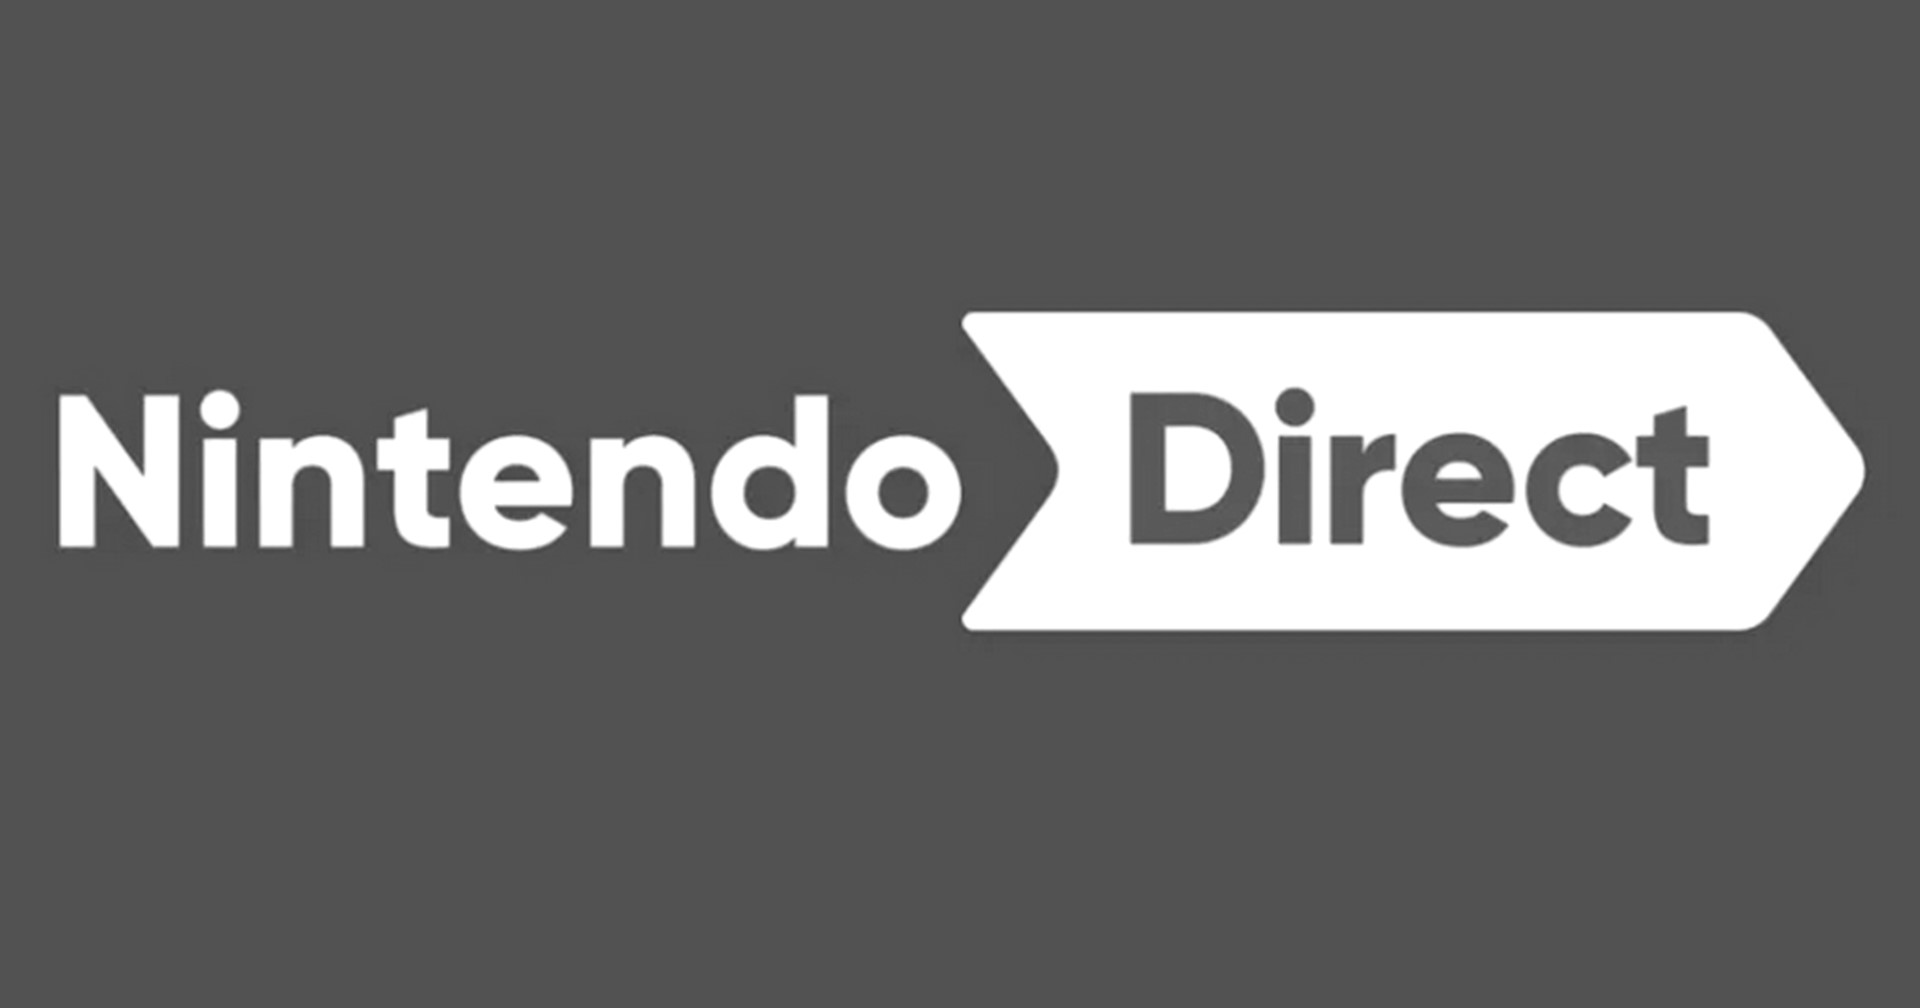 ข่าวลือ ปู่นินเลื่อนจัดงาน Nintendo Direct เนื่องจาก การสวรรคตของควีนเอลิซาเบธที่ 2